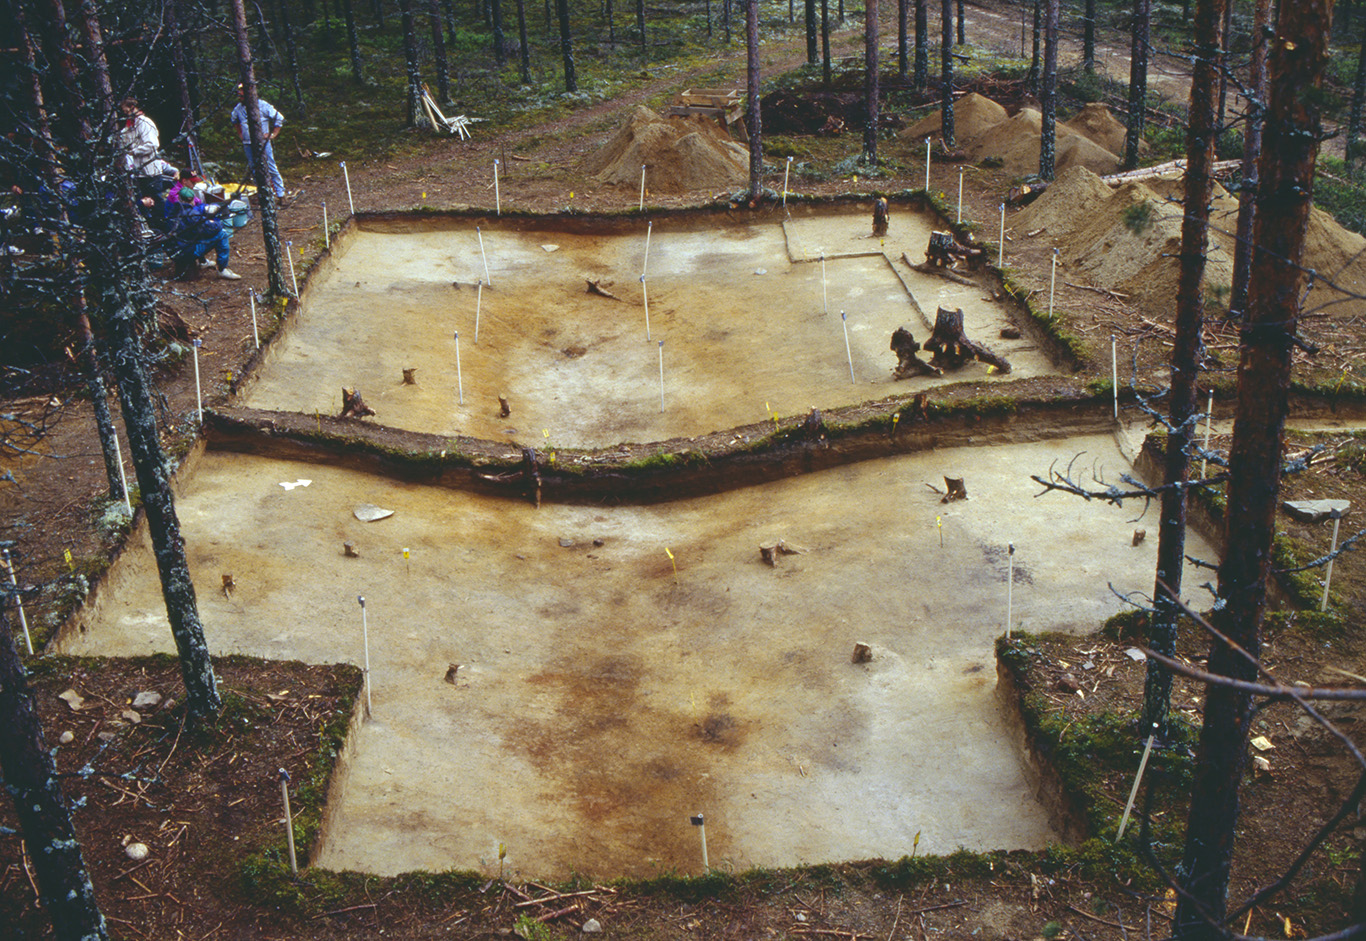 Kivikautisen talon pohja arkeologisten kaivausten jälkeen. Kaivausten myötä metsän maasta on otettu pintakerroksen kasvusto pois, jonka vuoksi erottuu talonpohjan muotoinen vaalea hiekkapohja.